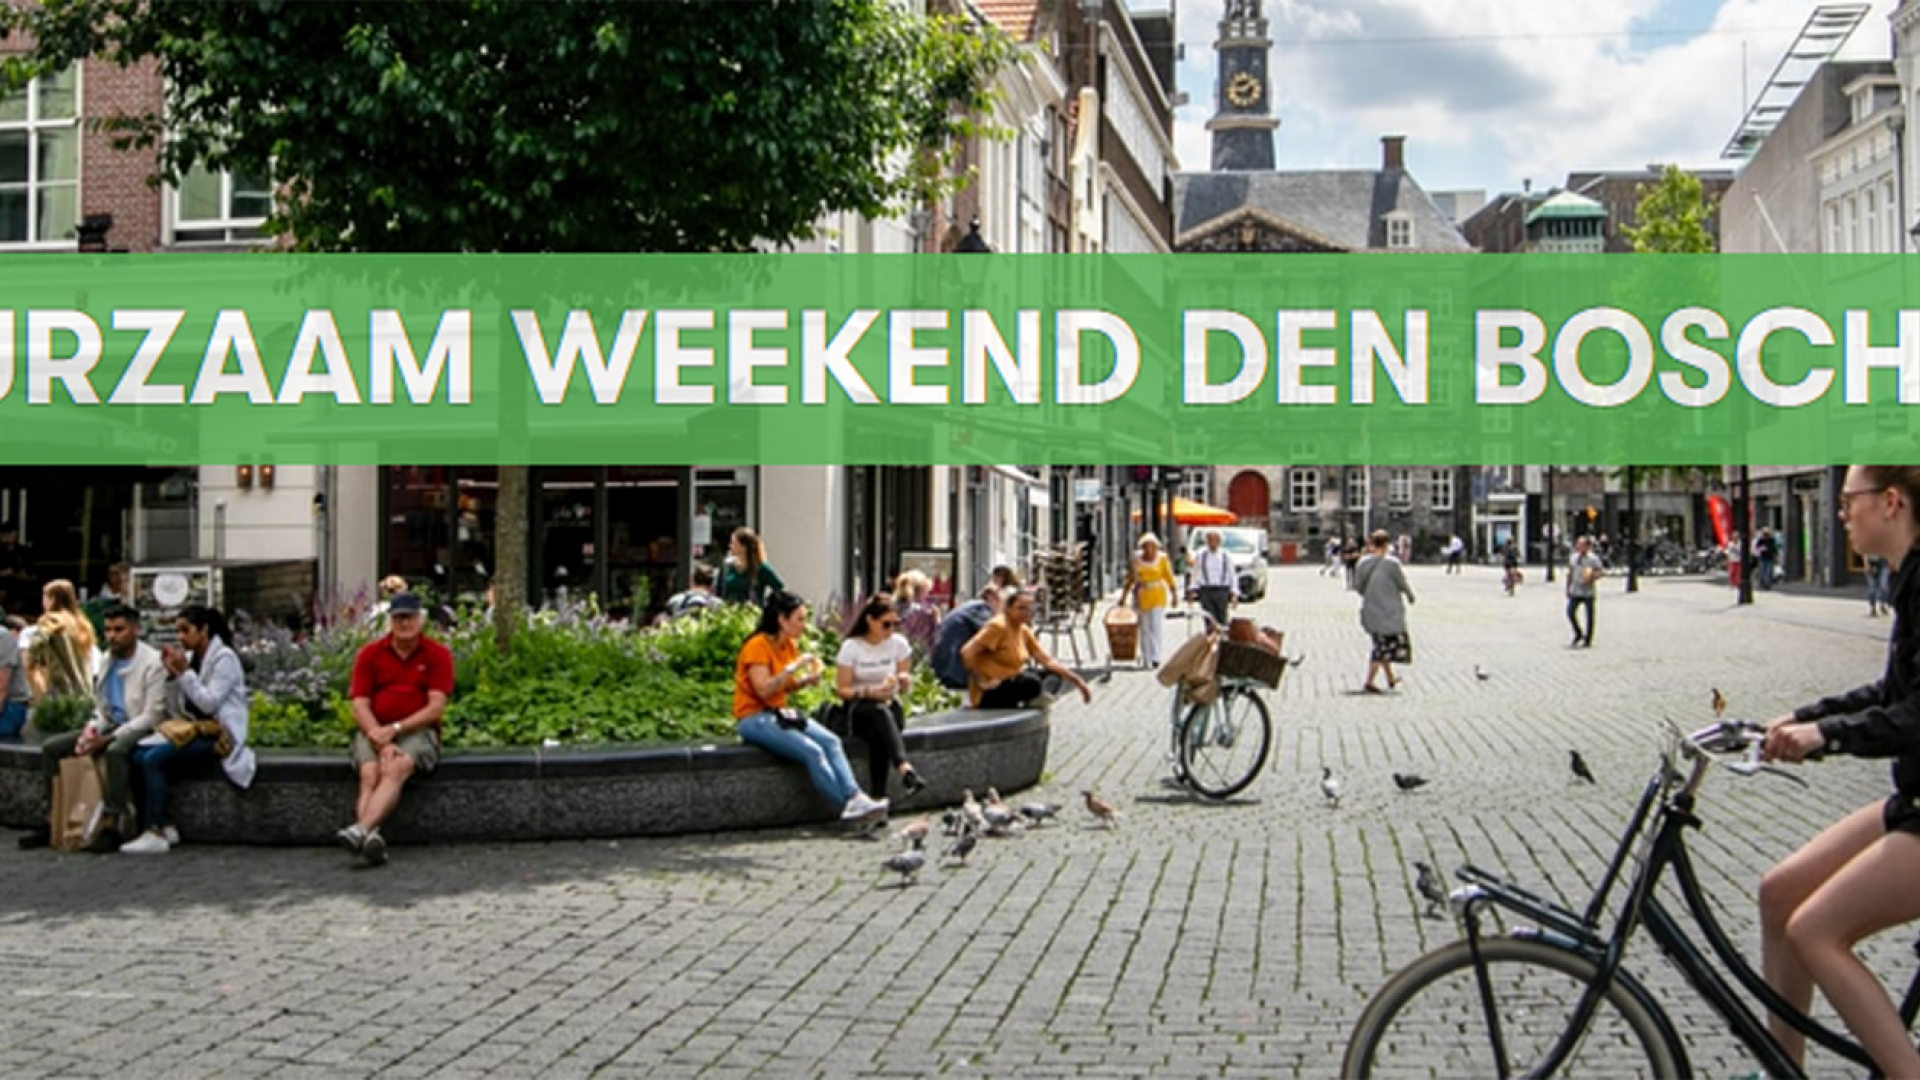 Markt Den Bosch header website Duurzame Week